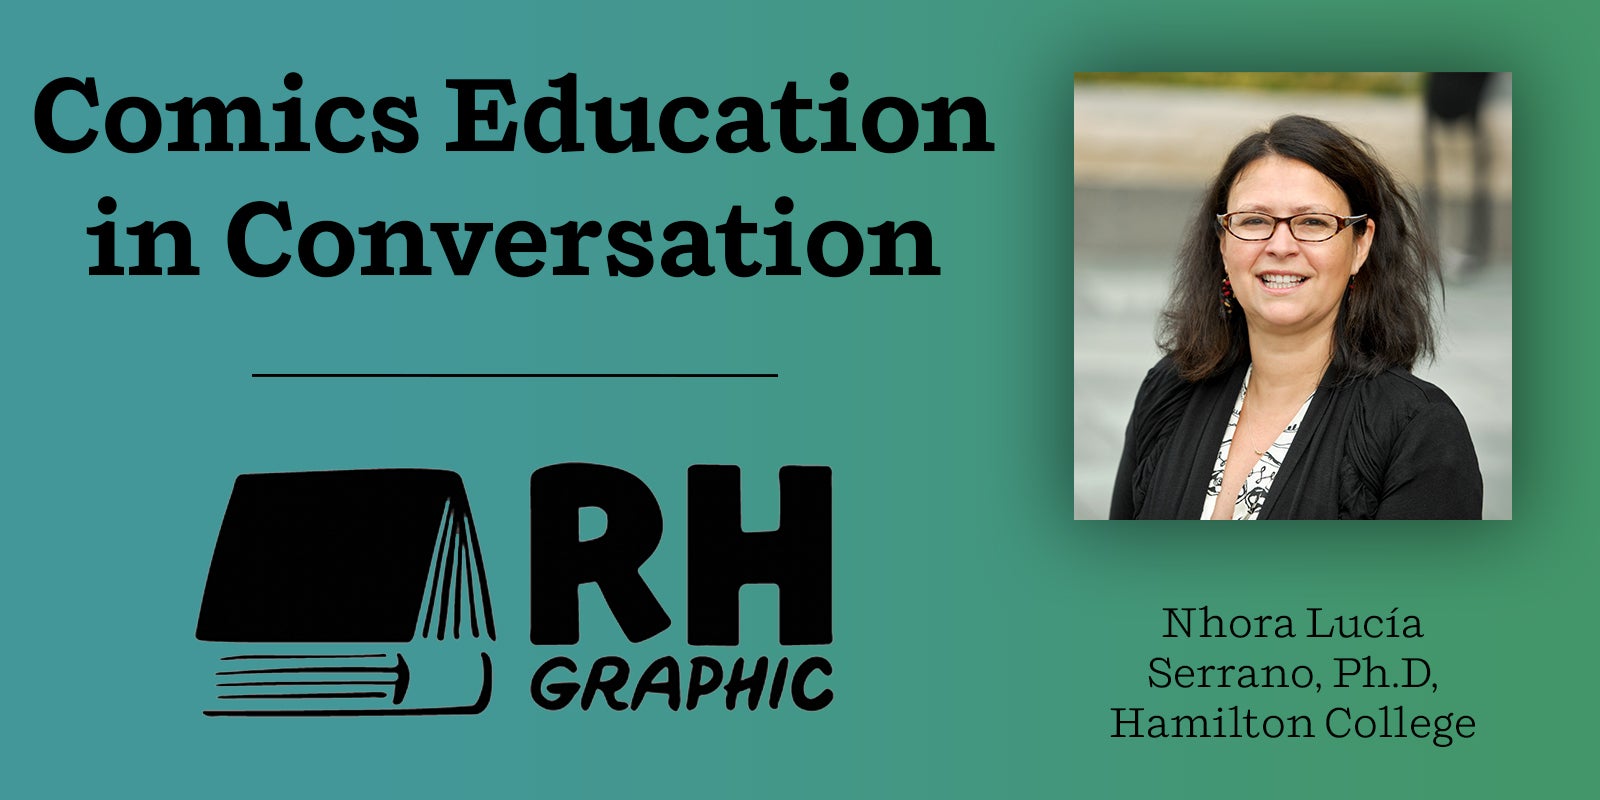 Comics Education in Conversation: Nhora Lucía Serrano